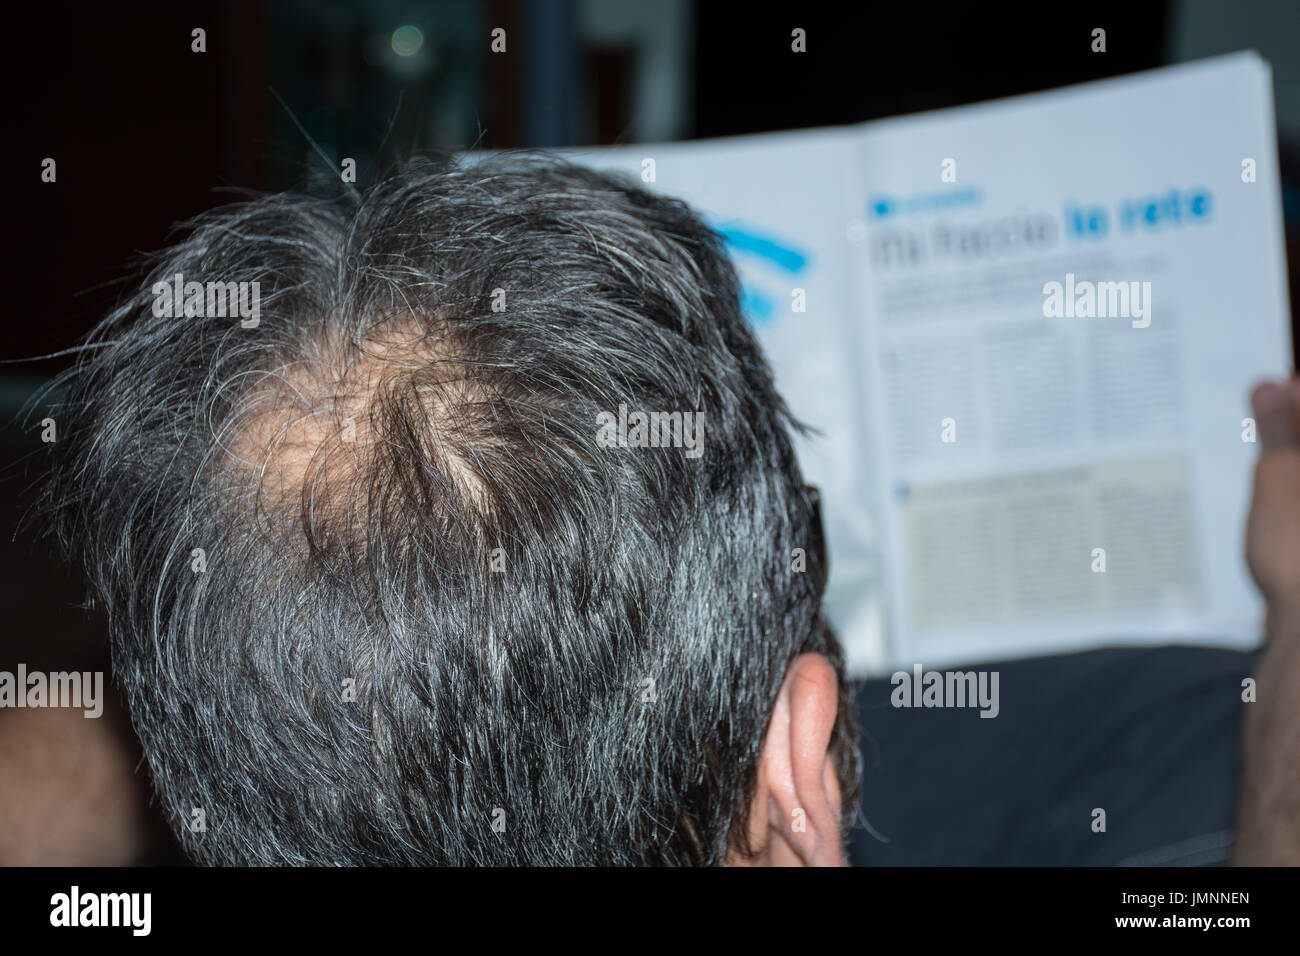 Reifer Mann, von hinten gesehen, im Kopf, beginnt die Haare zu verlieren, beginnt er, alt zu sein. Stockfoto